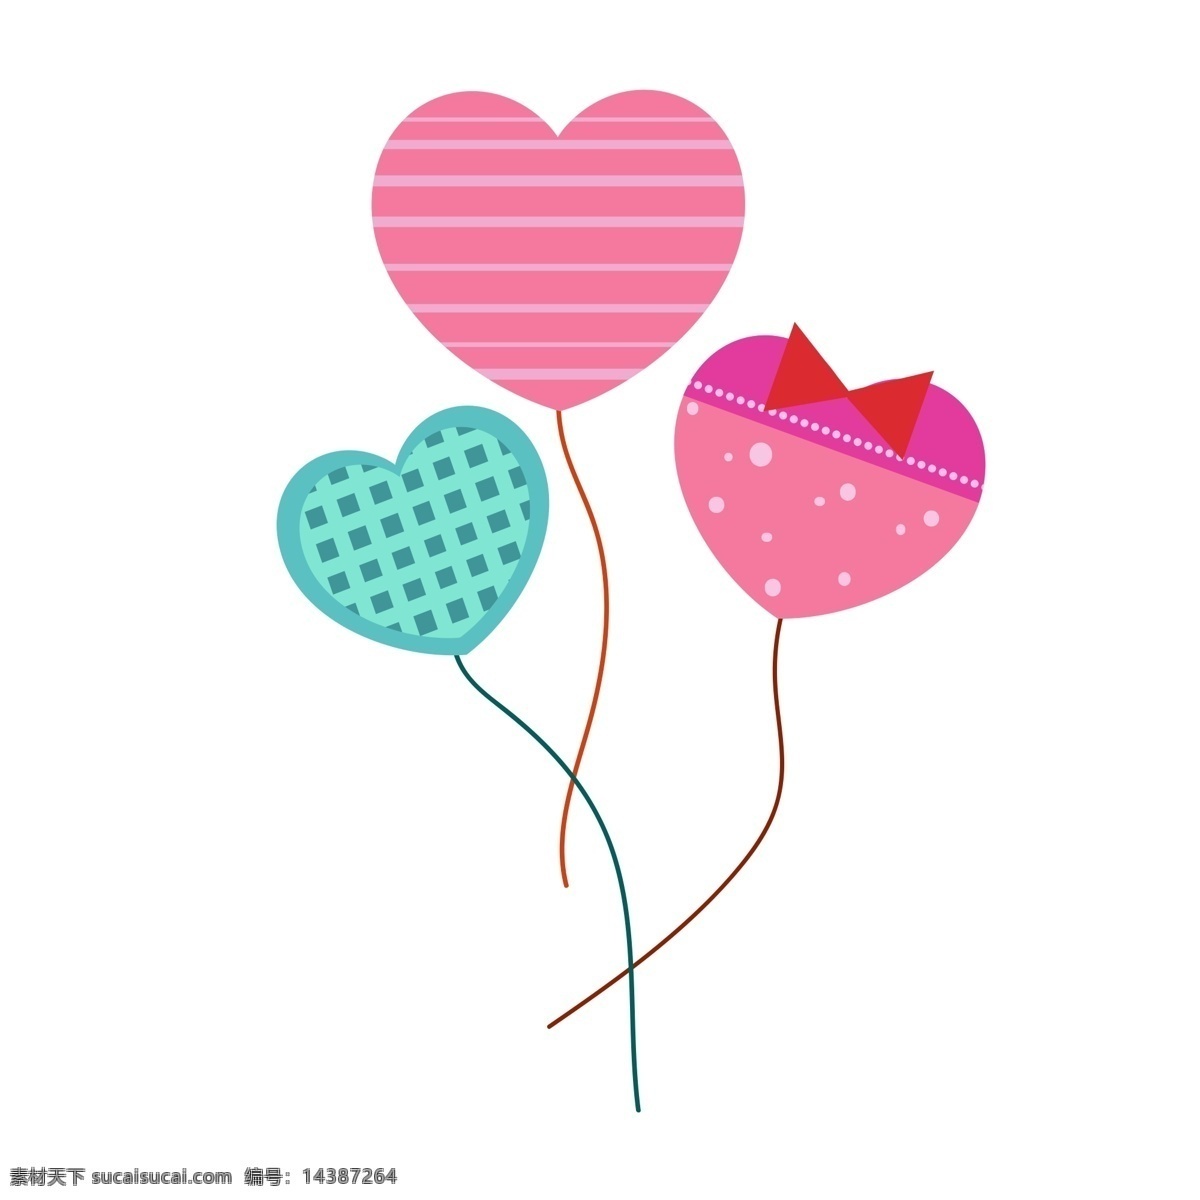 情人节 心形 气球 装饰 手绘心形气球 情人节气球 情人节装饰 浪漫节日 红色心形气球 情人节插画